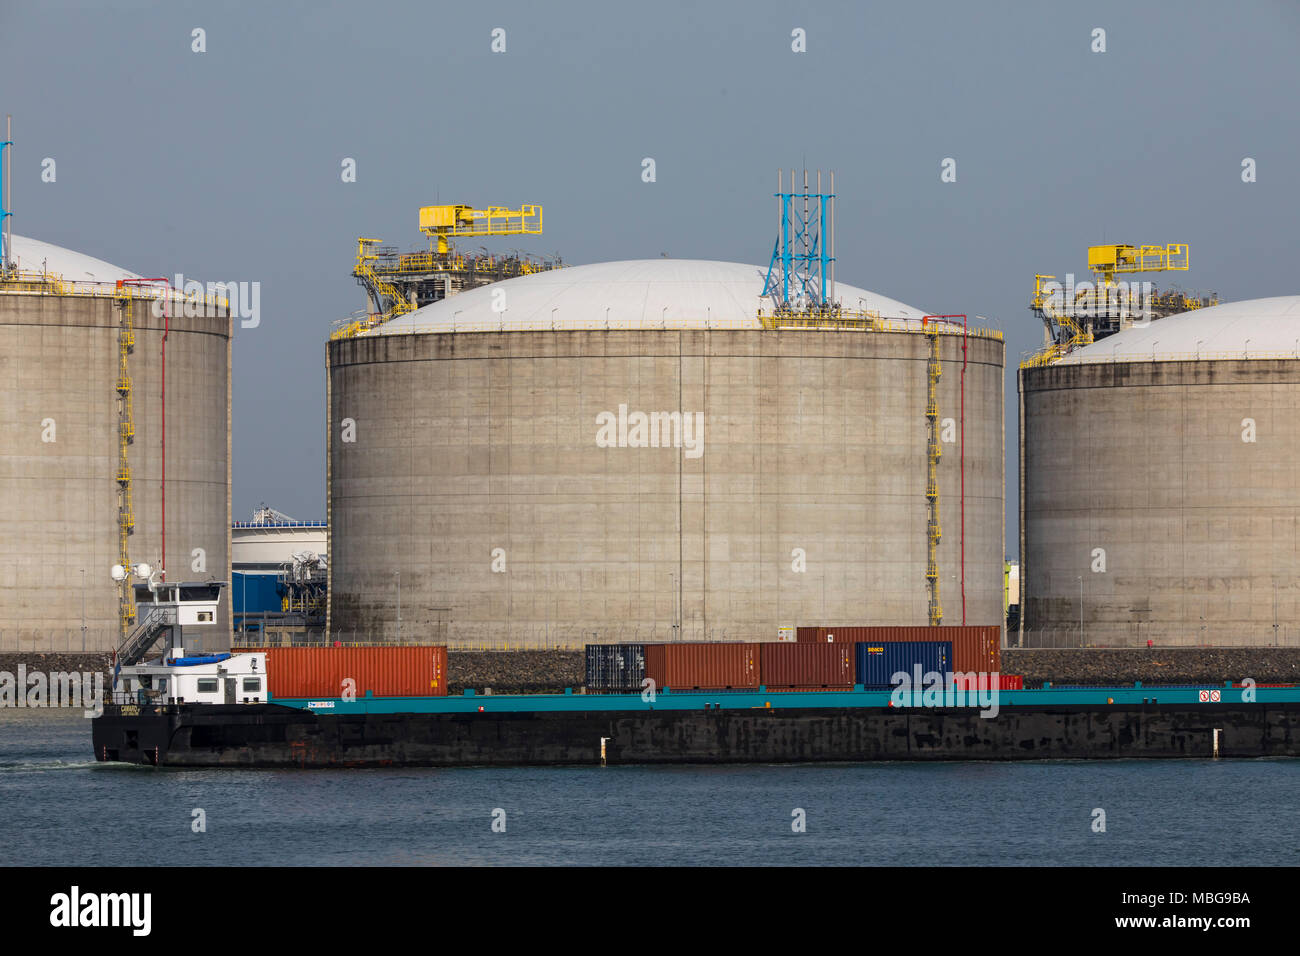 Der Hafen von Rotterdam, Niederlande, Deep-sea port Maasvlakte 2, auf einer künstlich geschaffenen Land Bereich vor der ursprünglichen Küste, große Tanks Stockfoto